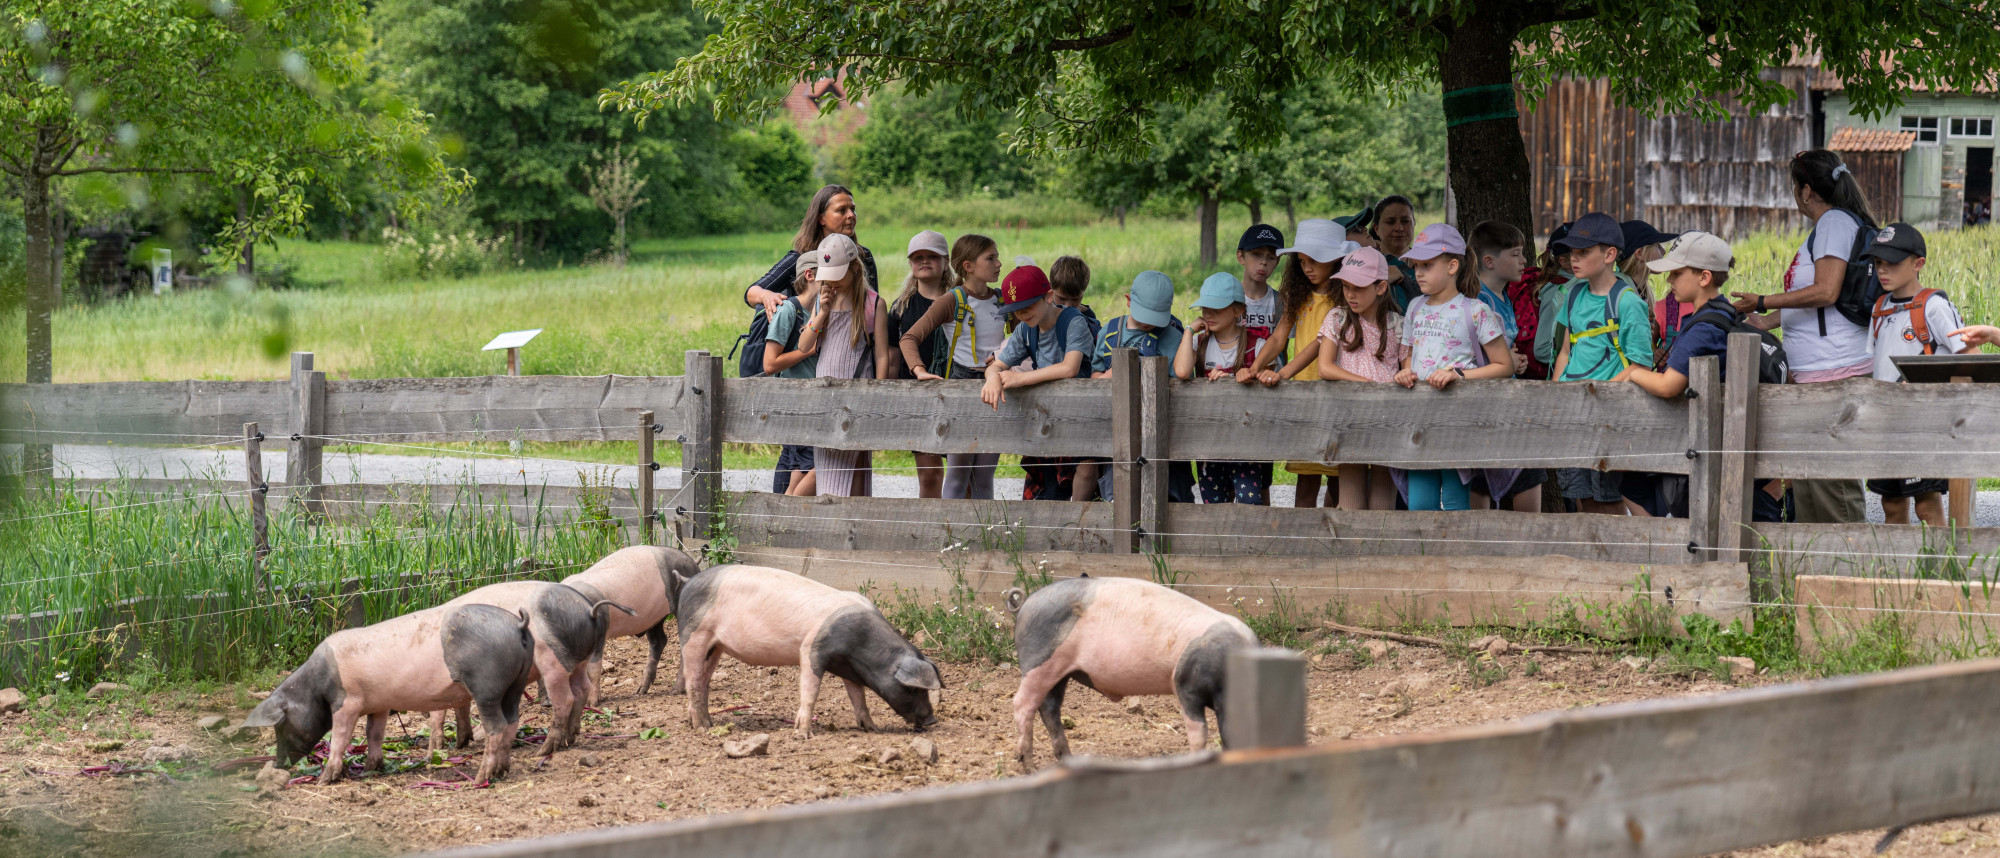 Eine Schulklasse betrachtet am Zaun eine Gruppe von Schweinen